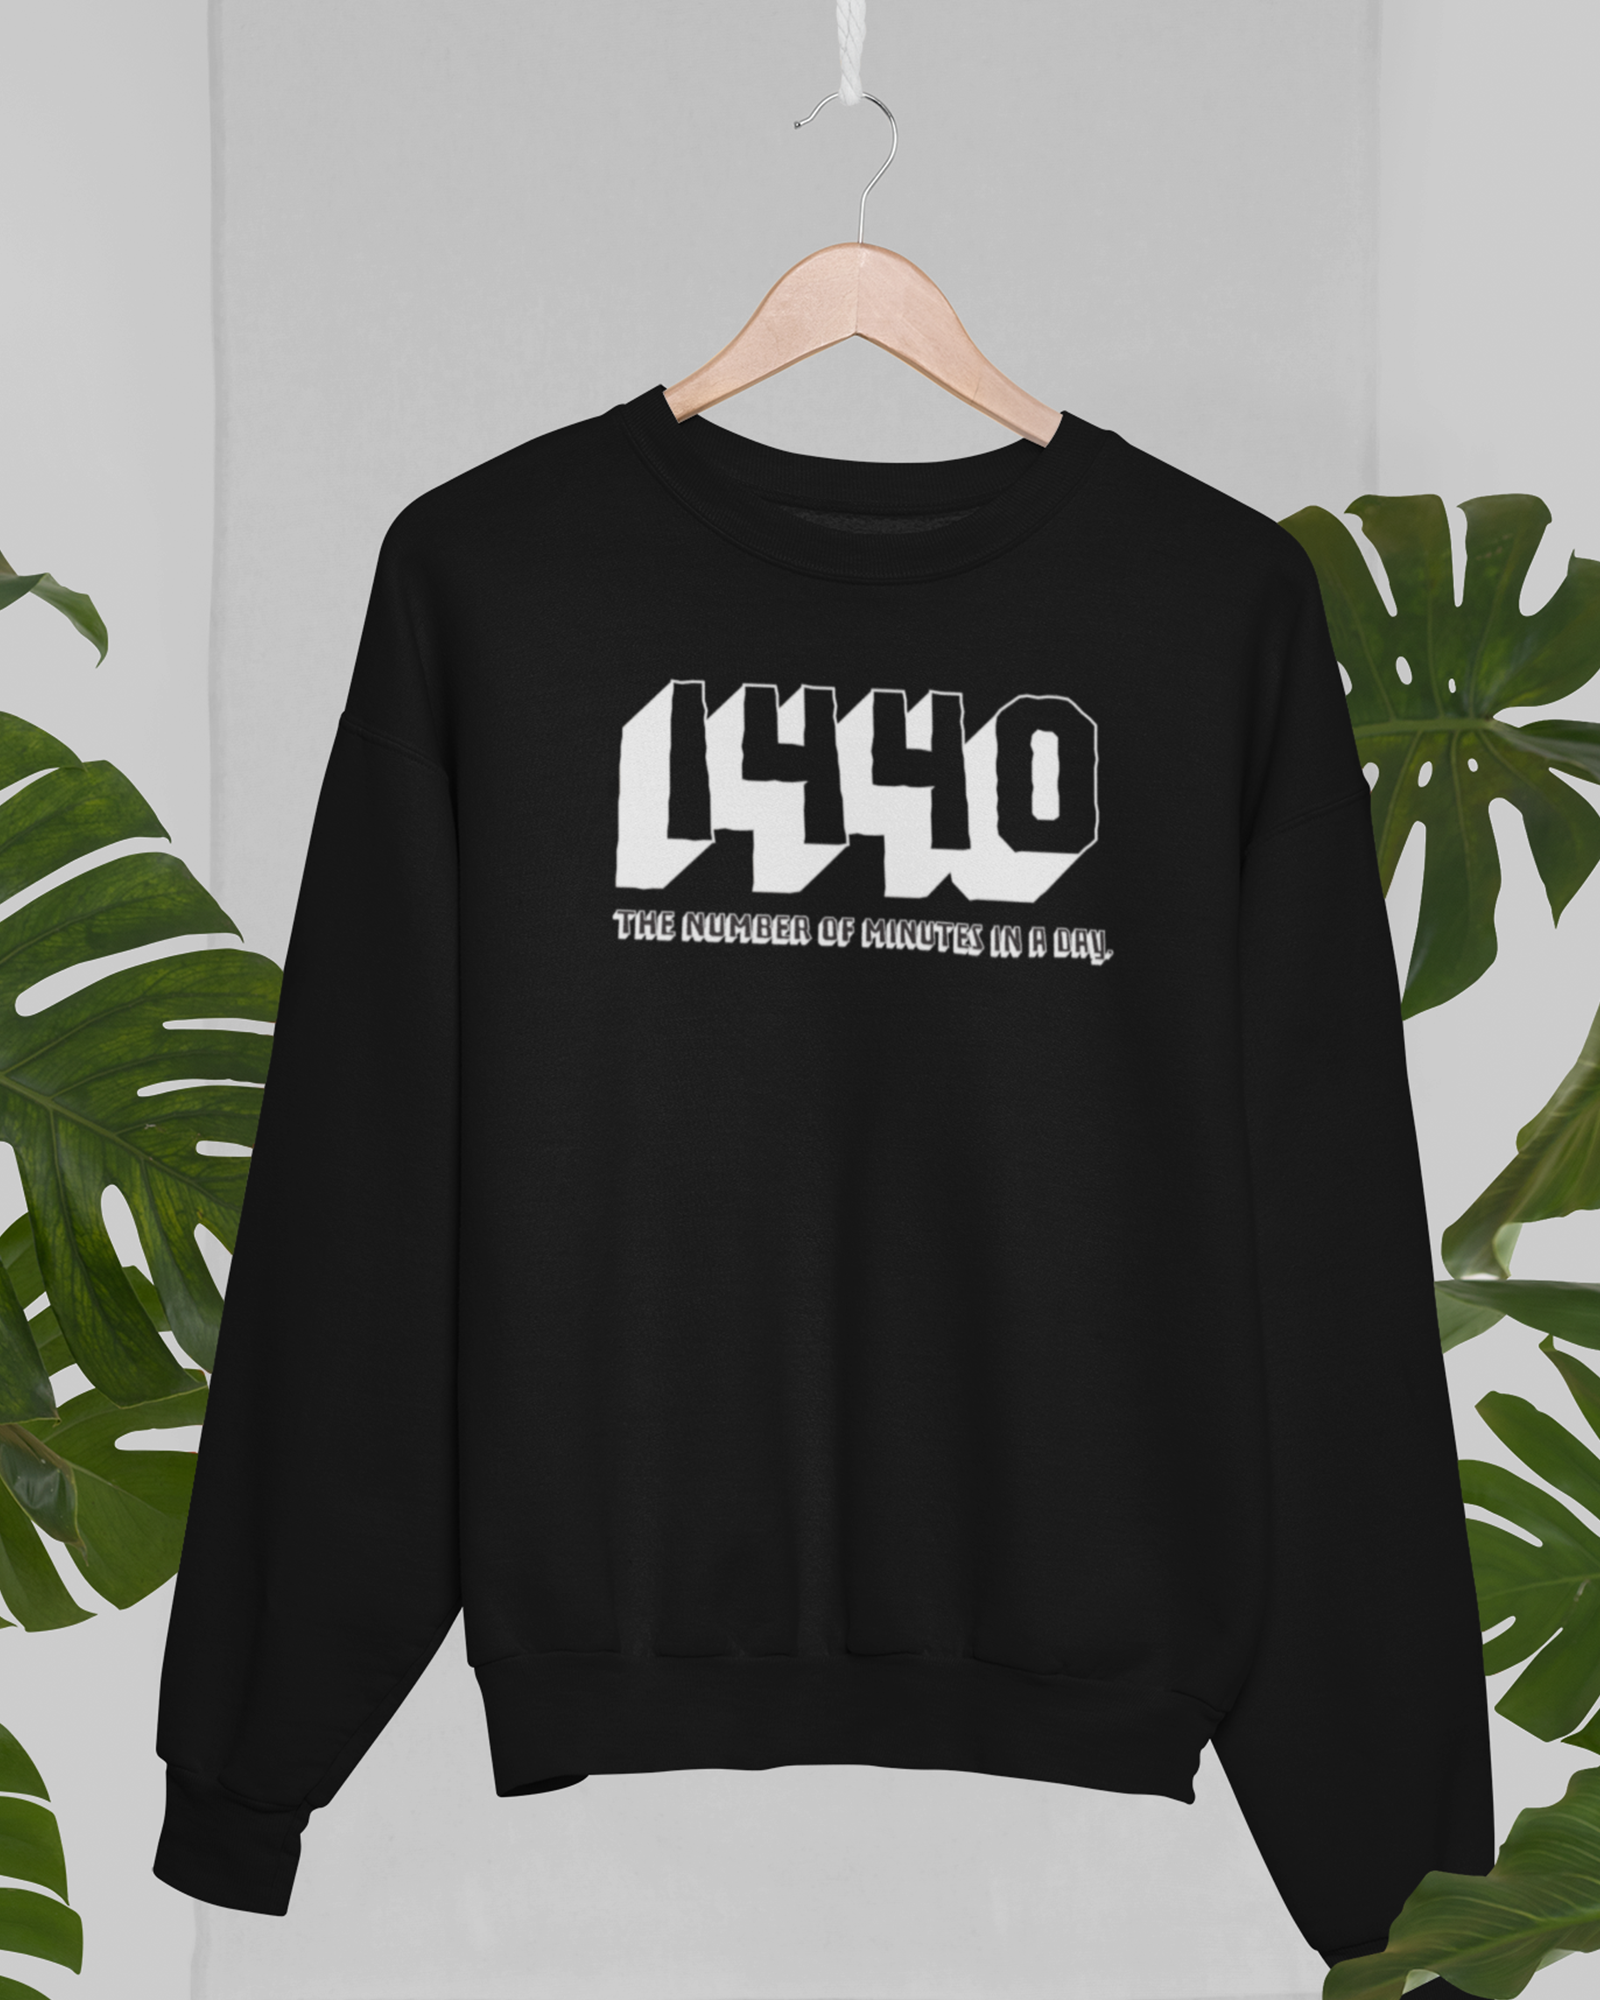 1440 Sweatshirt